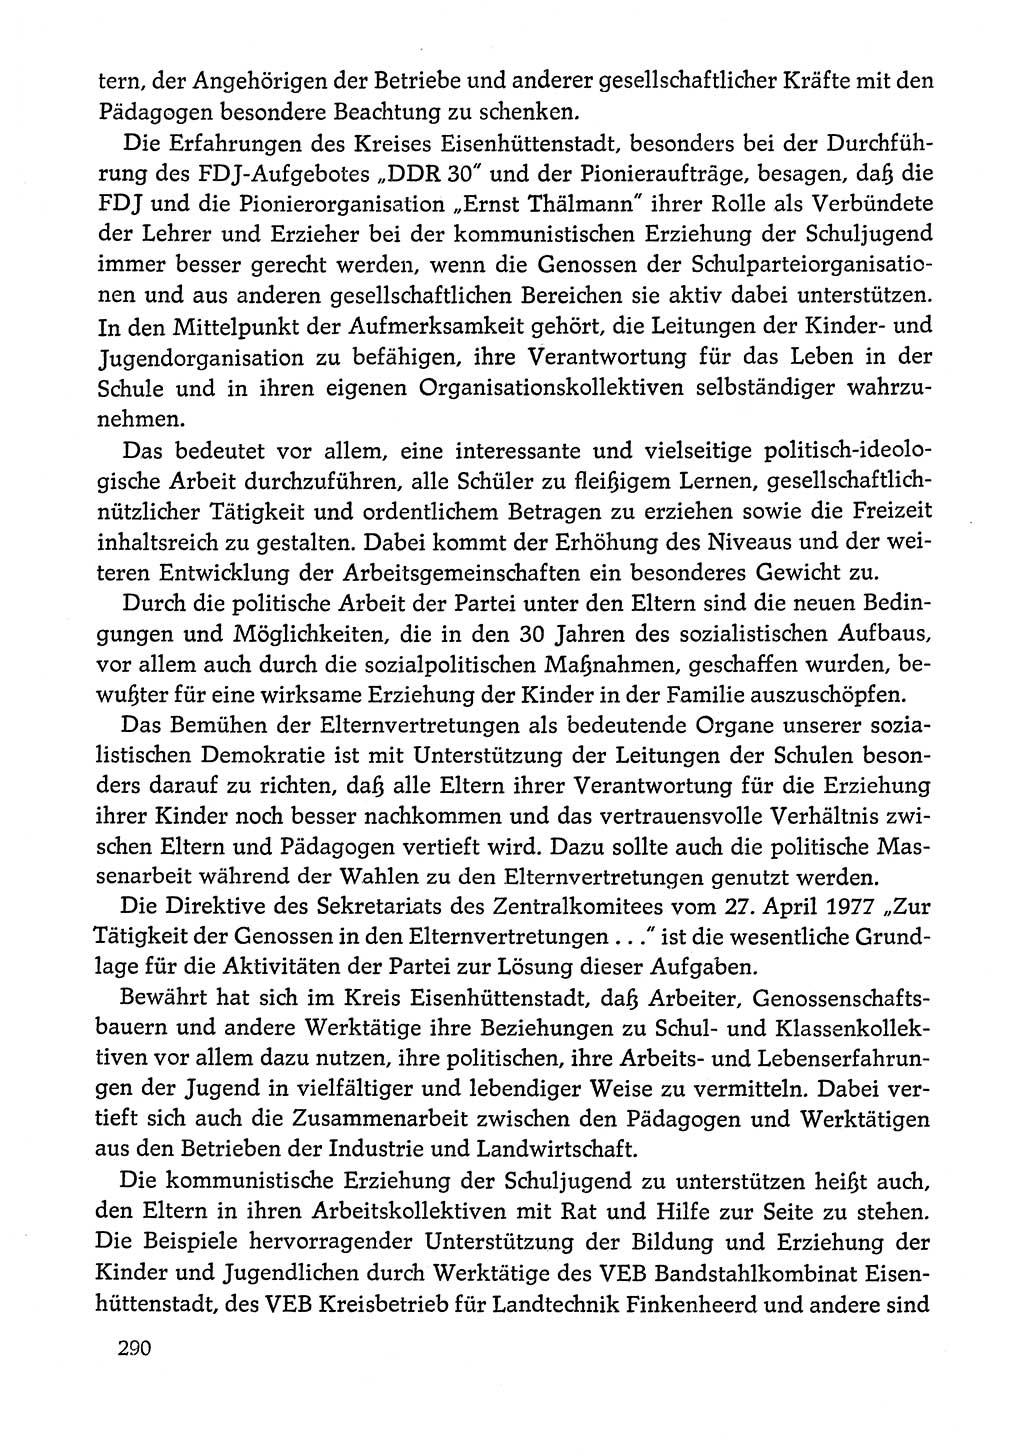 Dokumente der Sozialistischen Einheitspartei Deutschlands (SED) [Deutsche Demokratische Republik (DDR)] 1978-1979, Seite 290 (Dok. SED DDR 1978-1979, S. 290)